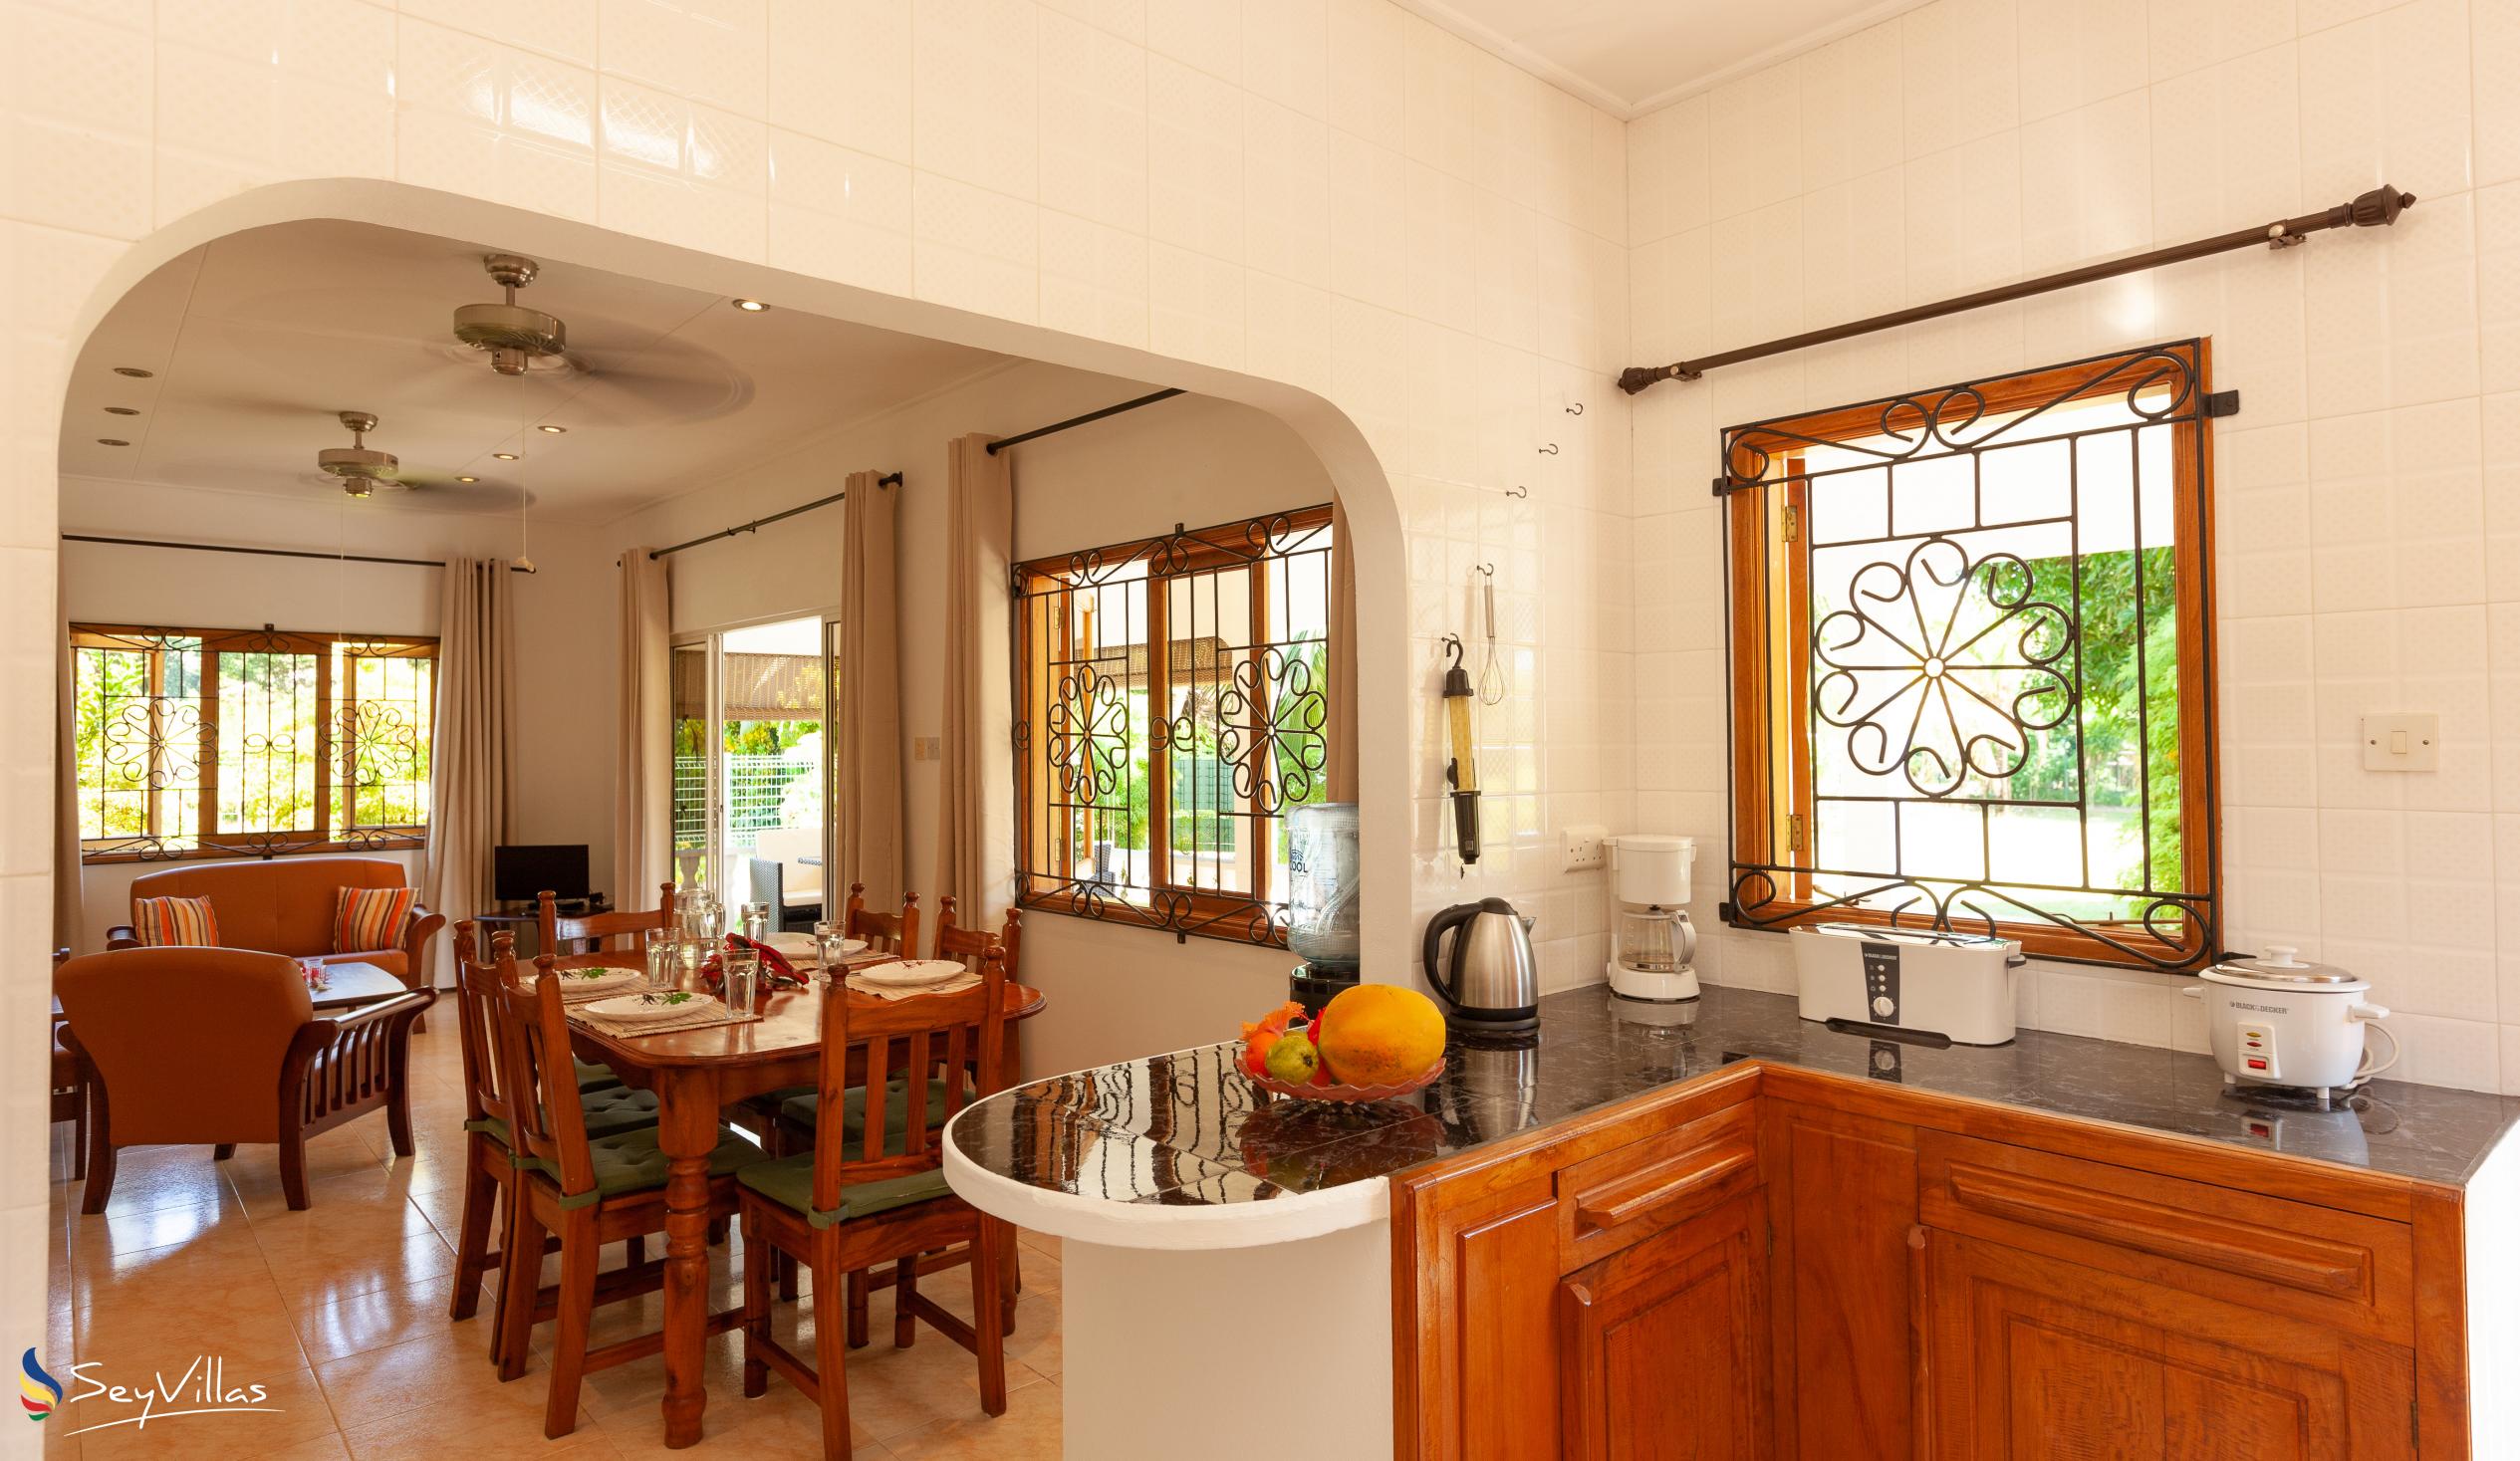 Foto 20: Chez Marlin - Gästehaus mit 2 Schlafzimmern - Praslin (Seychellen)